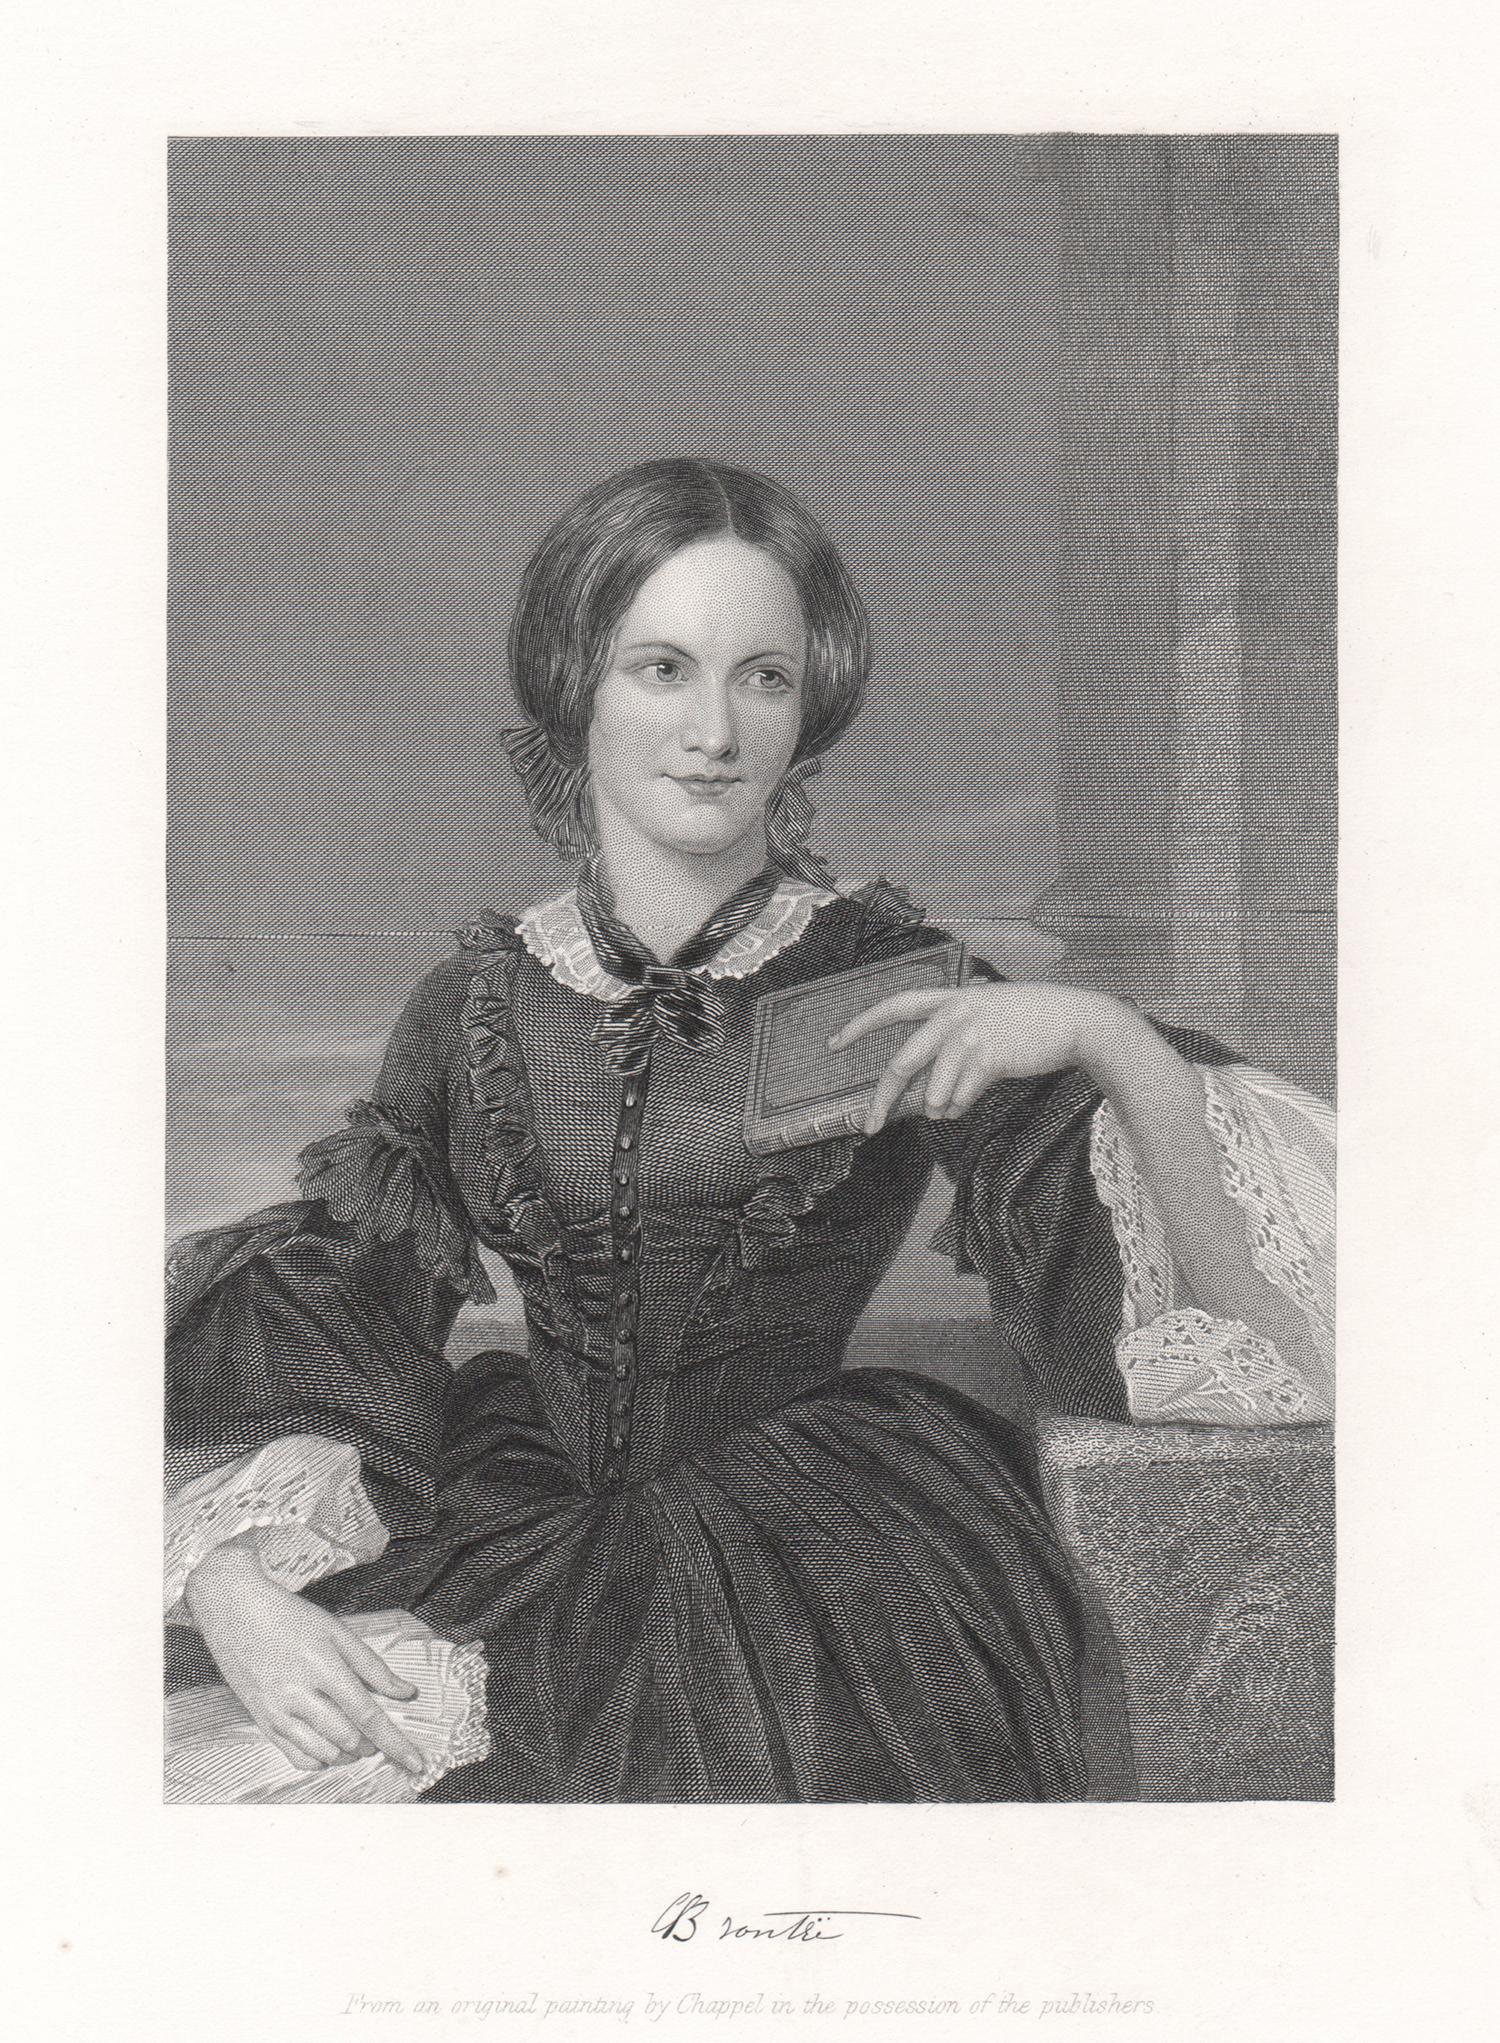 Unknown Portrait Print - Charlotte Bronte, author, portrait engraving, c1870